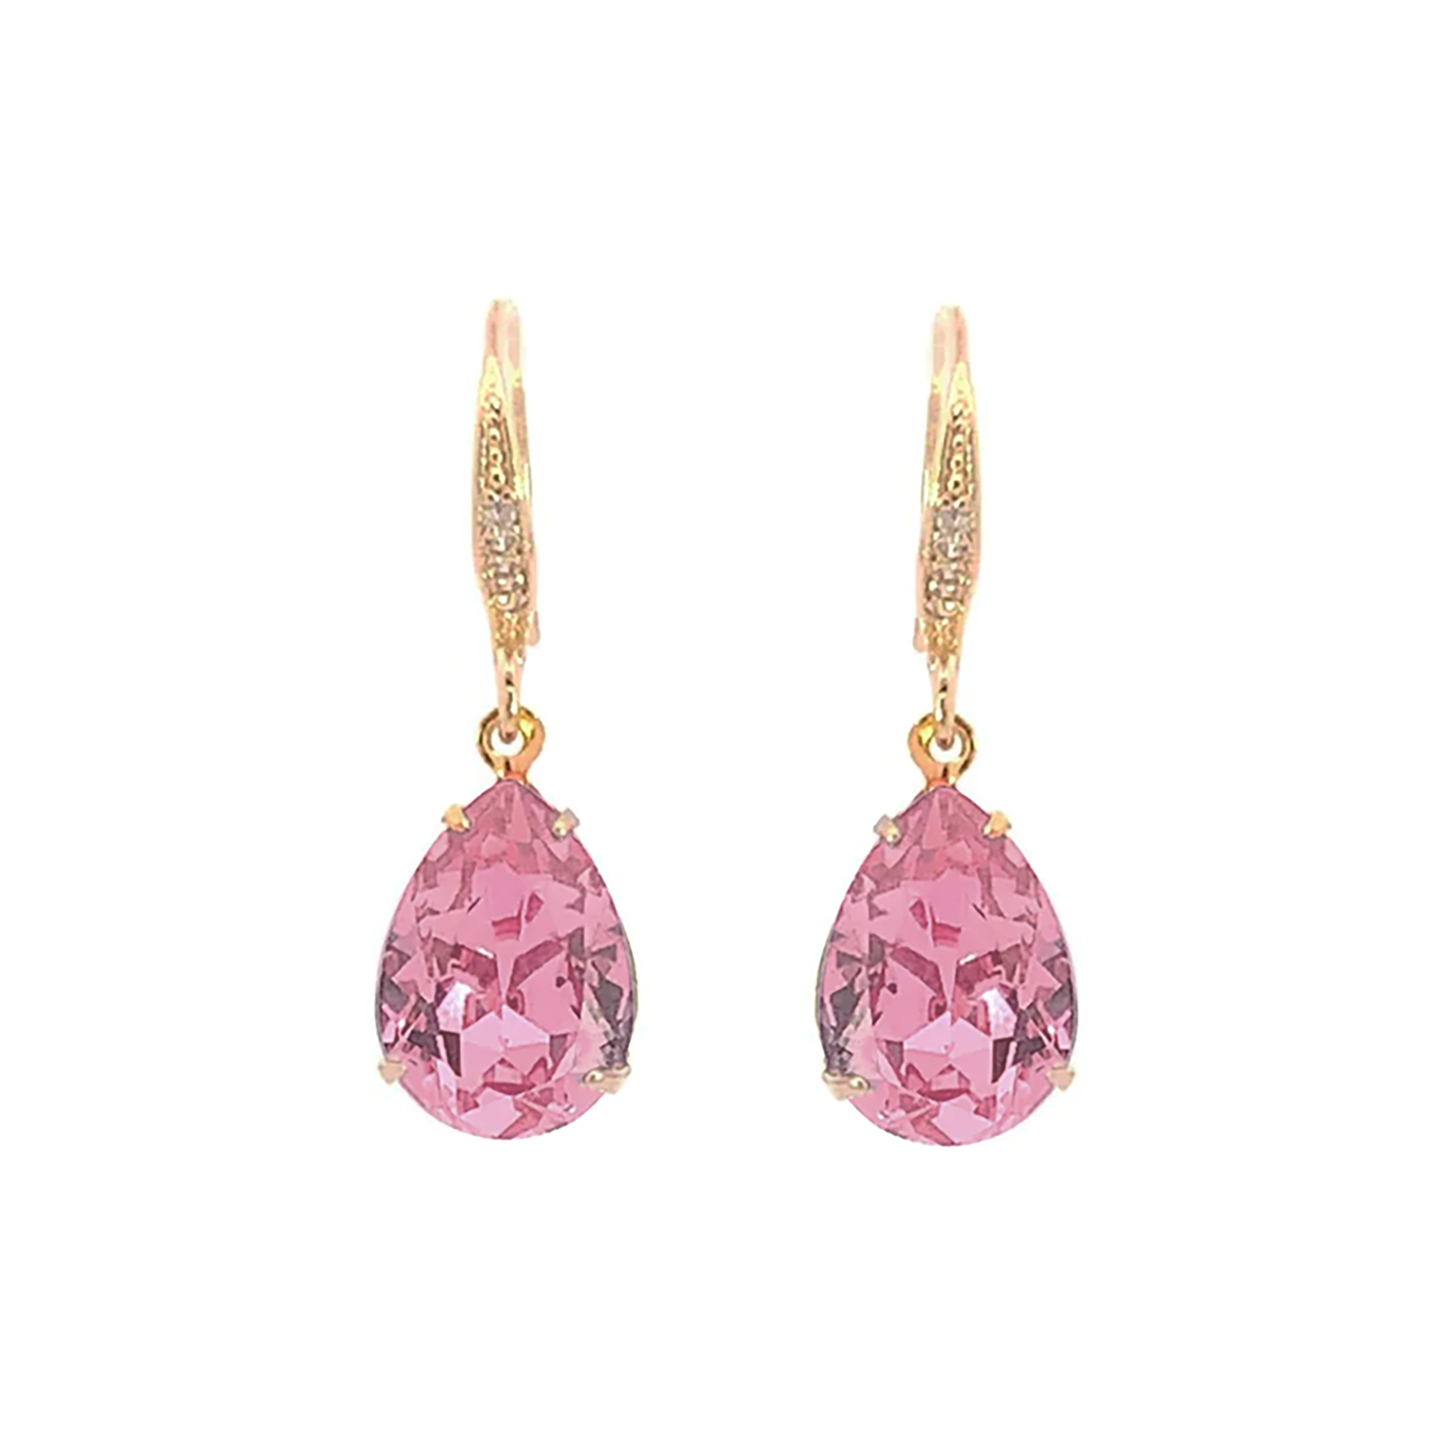 pink tourmaline crystal teardrop earrings gold